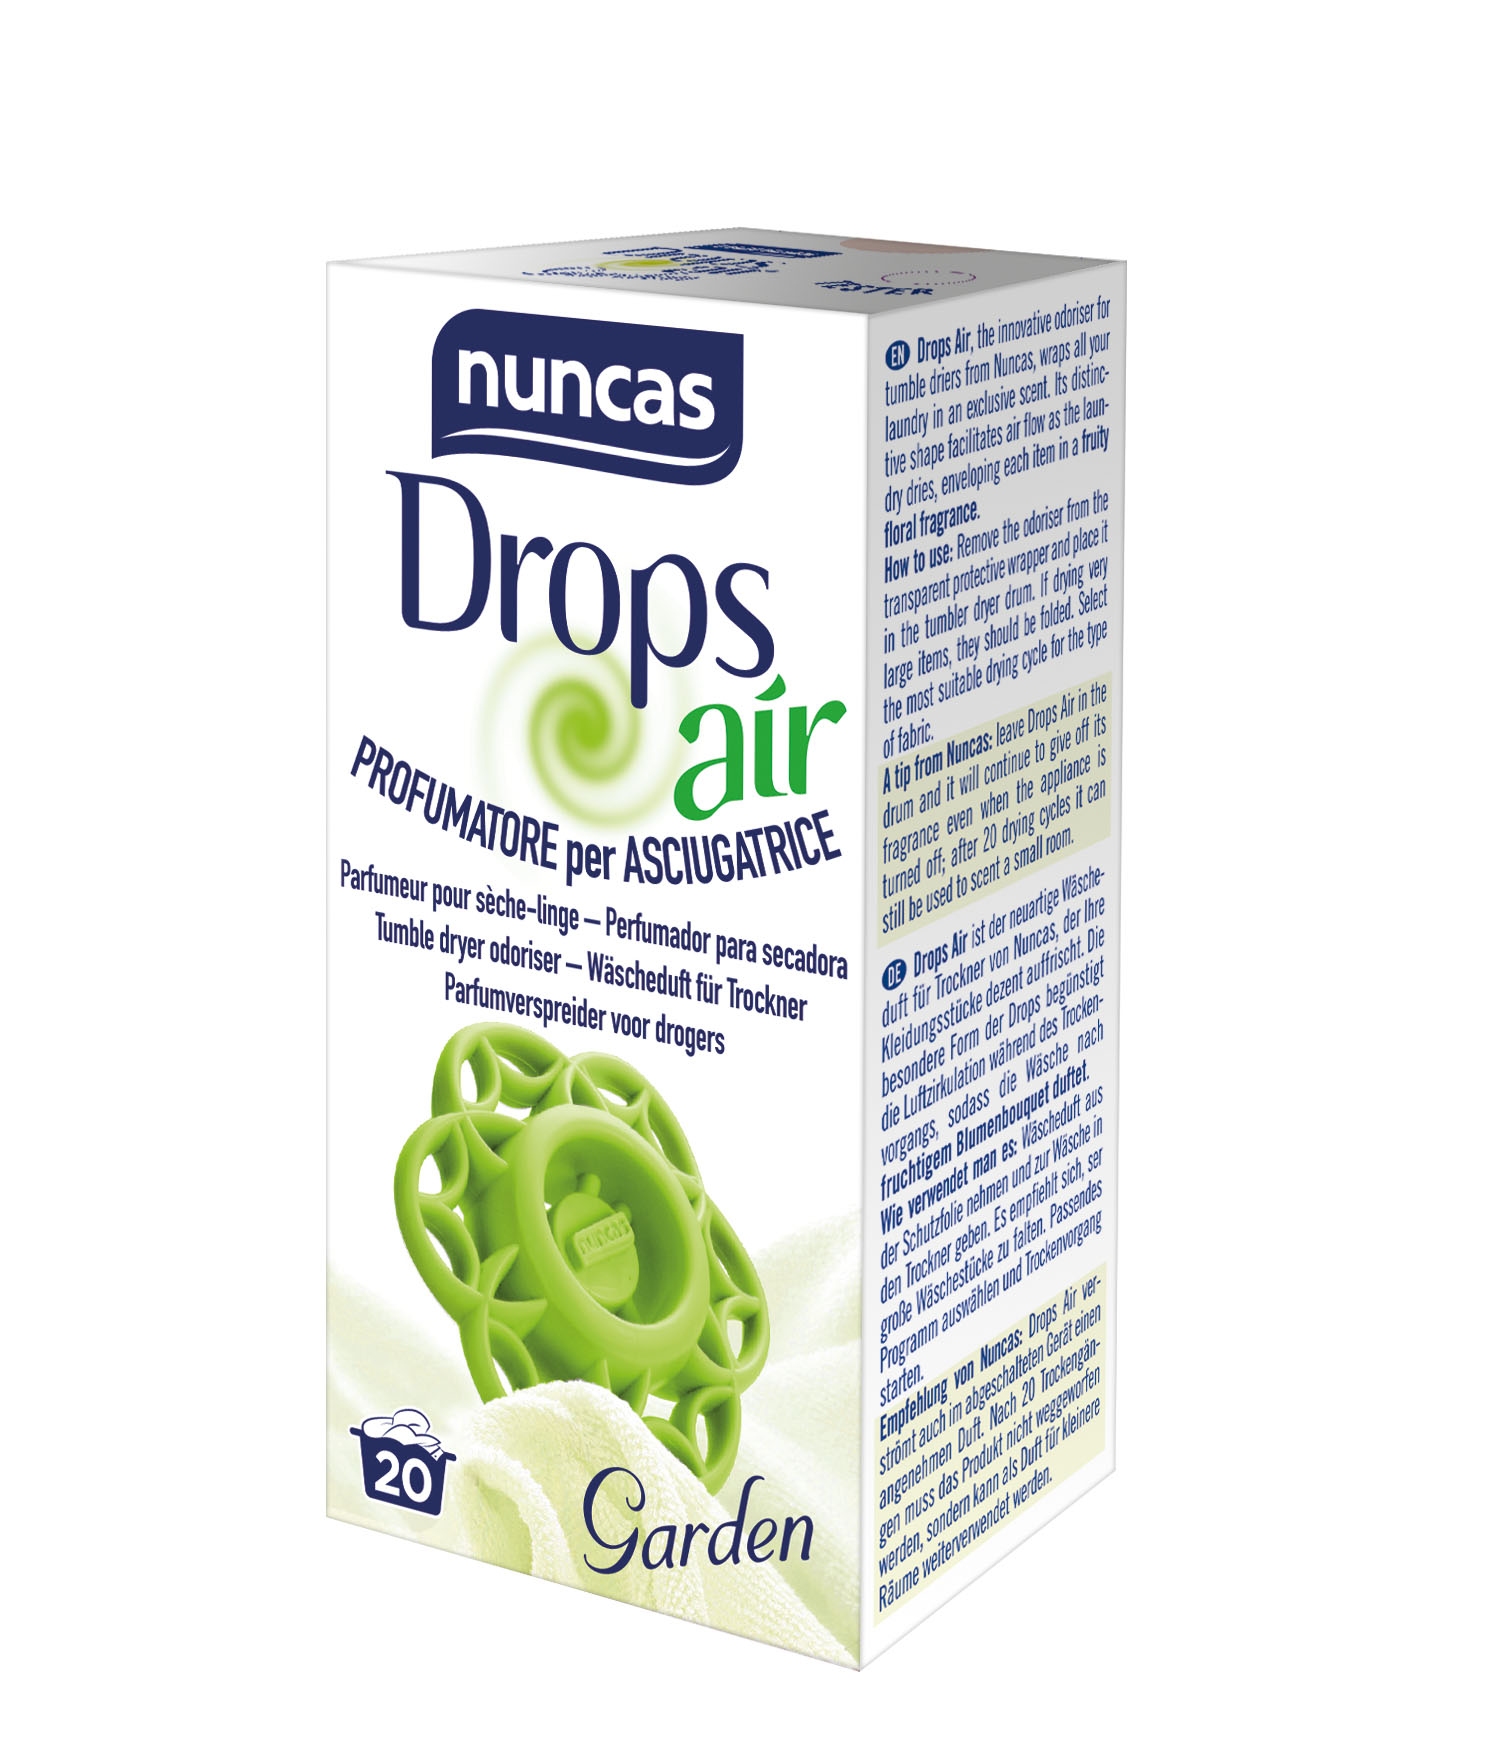 Drops Air Garden